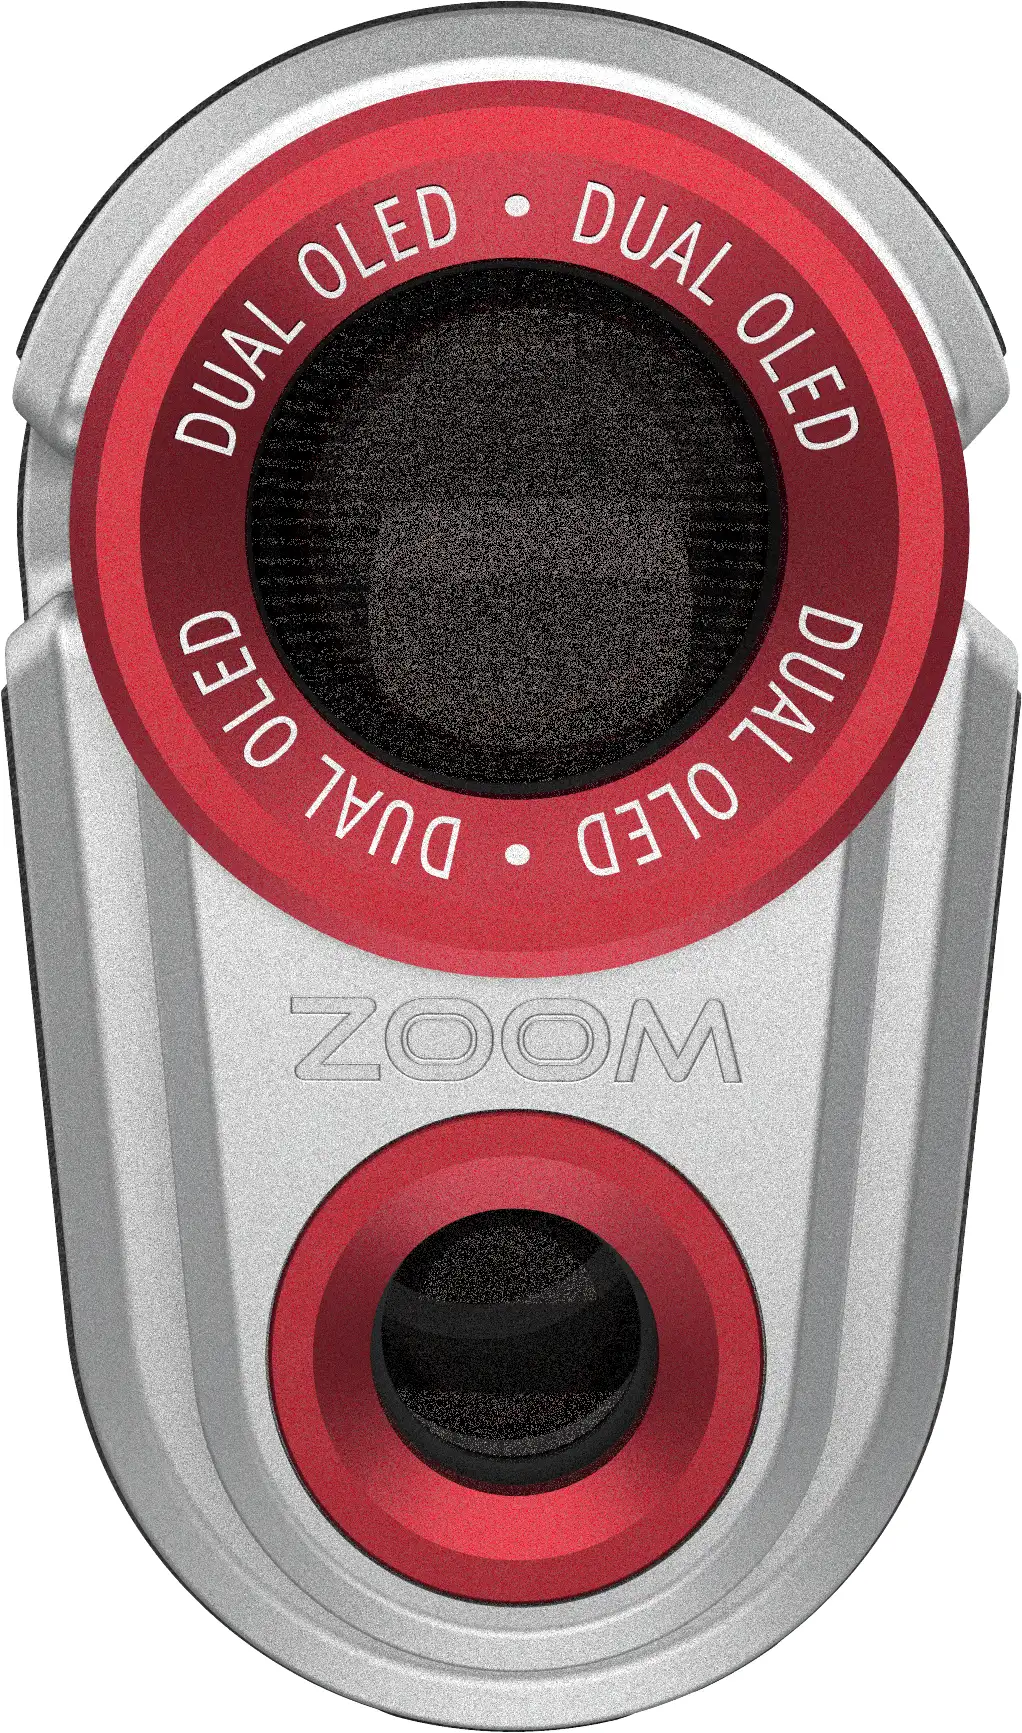 Zoom OLED Pro Laser Entfernungsmesser